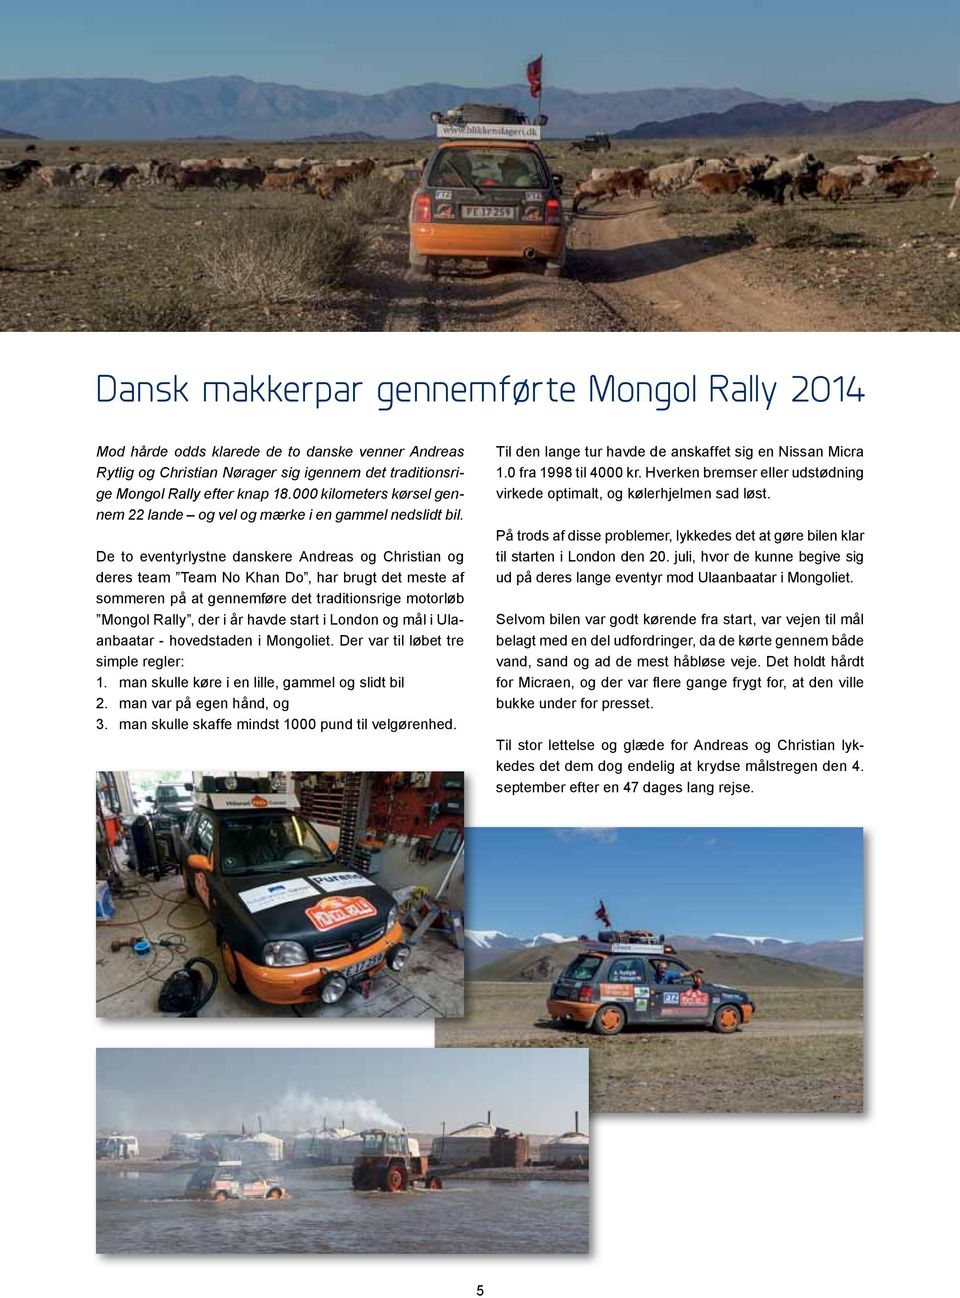 De to eventyrlystne danskere Andreas og Christian og deres team Team No Khan Do, har brugt det meste af sommeren på at gennemføre det traditionsrige motorløb Mongol Rally, der i år havde start i